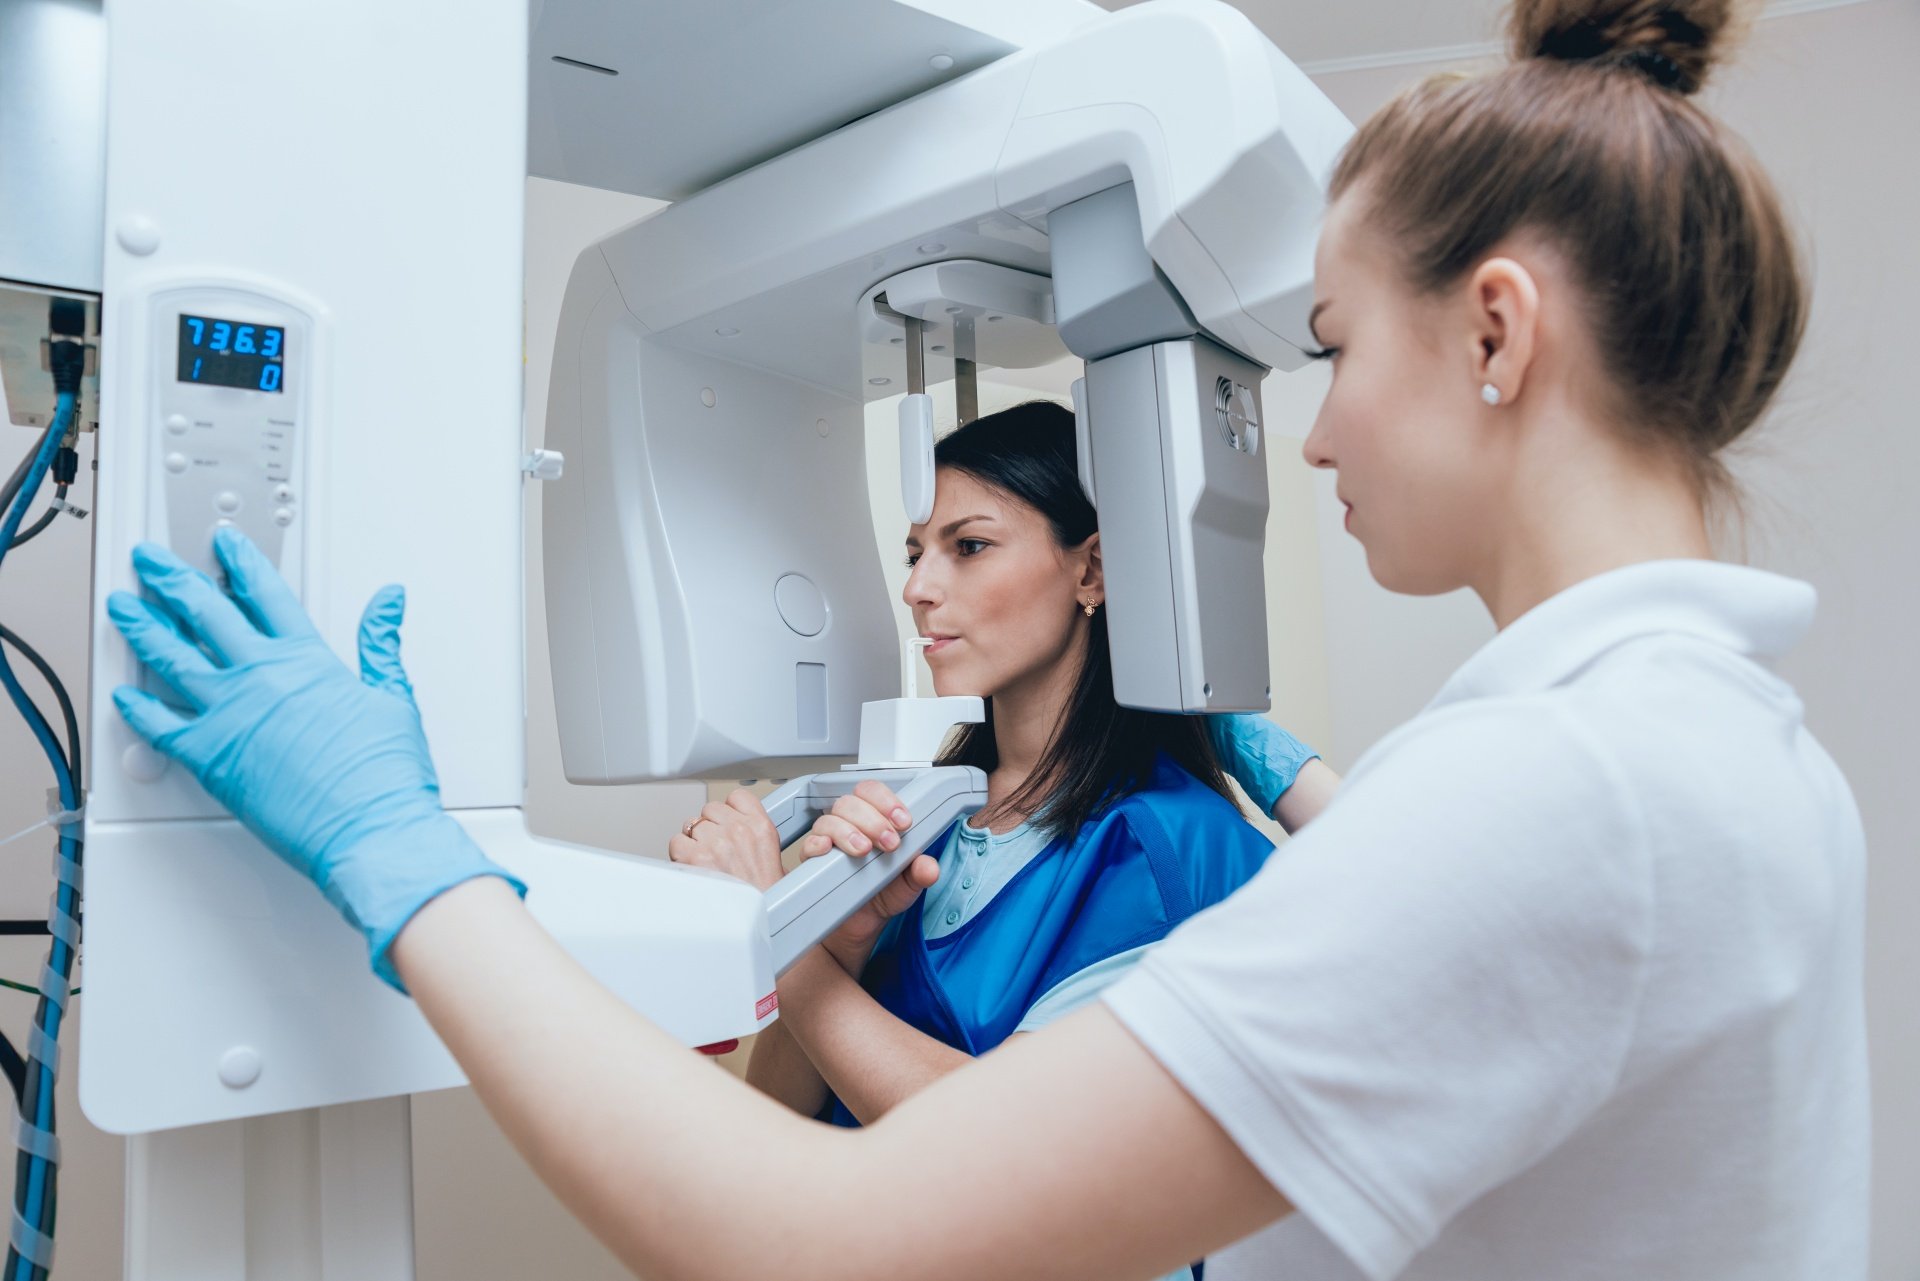 Минздрав предлагает обсудить, можно ли работать в жилых домах стоматологиям с рентген-аппаратами